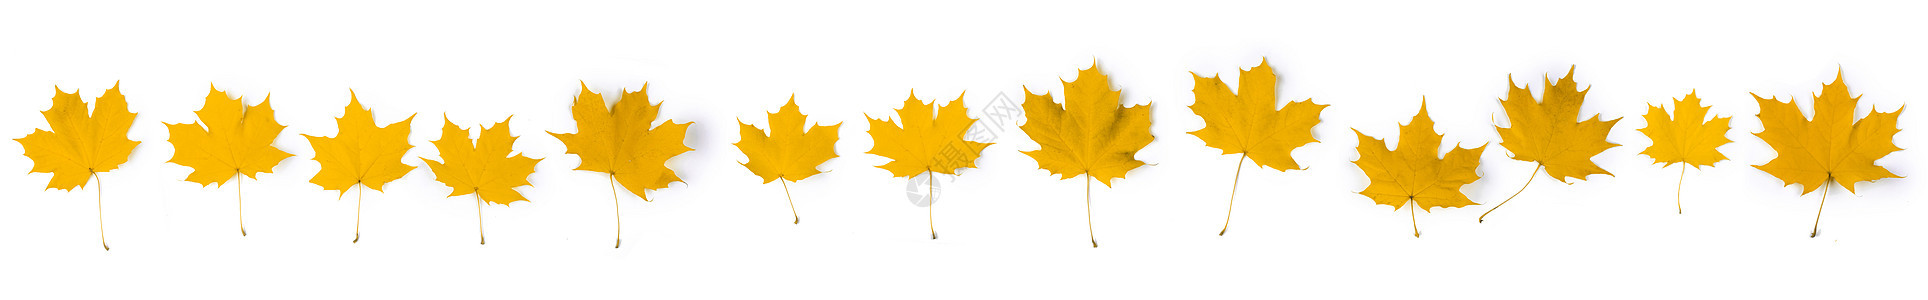 黄色秋秋叶叶子金子团体白色植物收藏季节性季节树叶图片